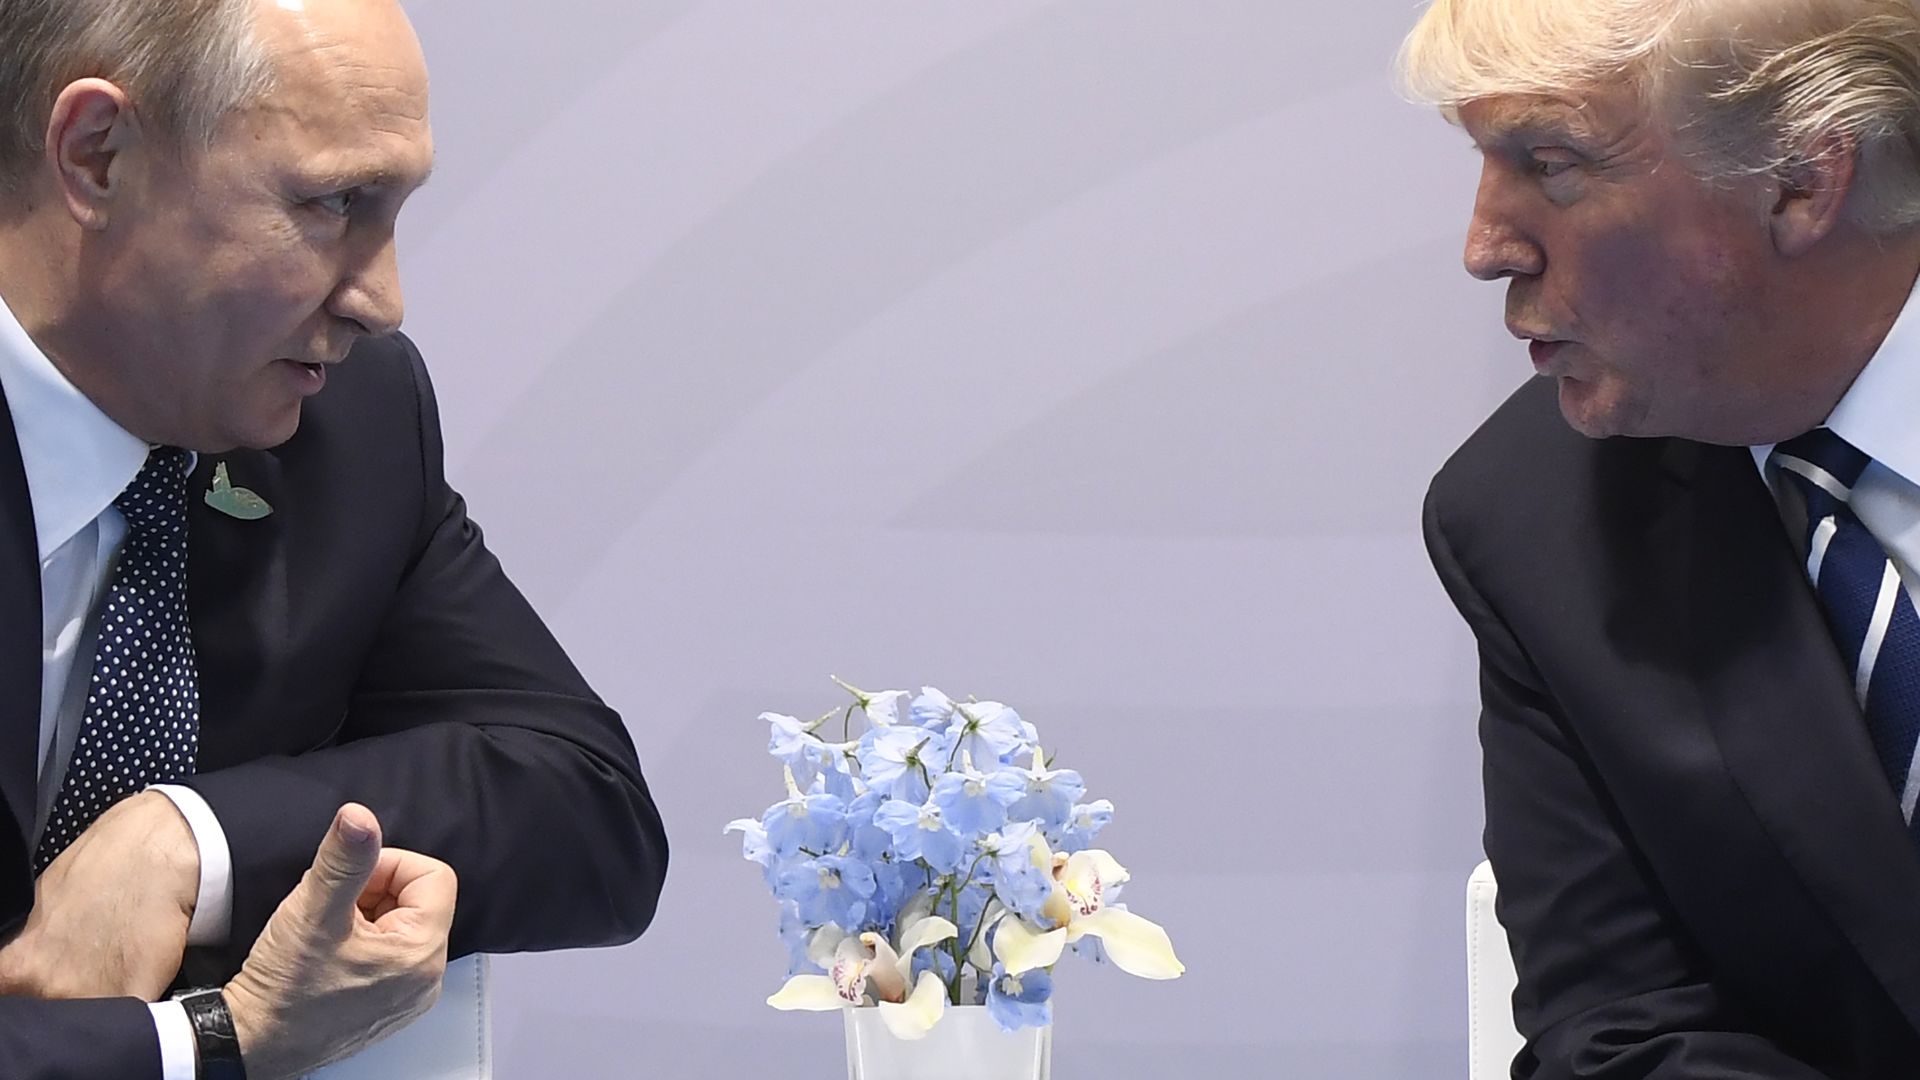 Trump and Putin at the G20 Summit